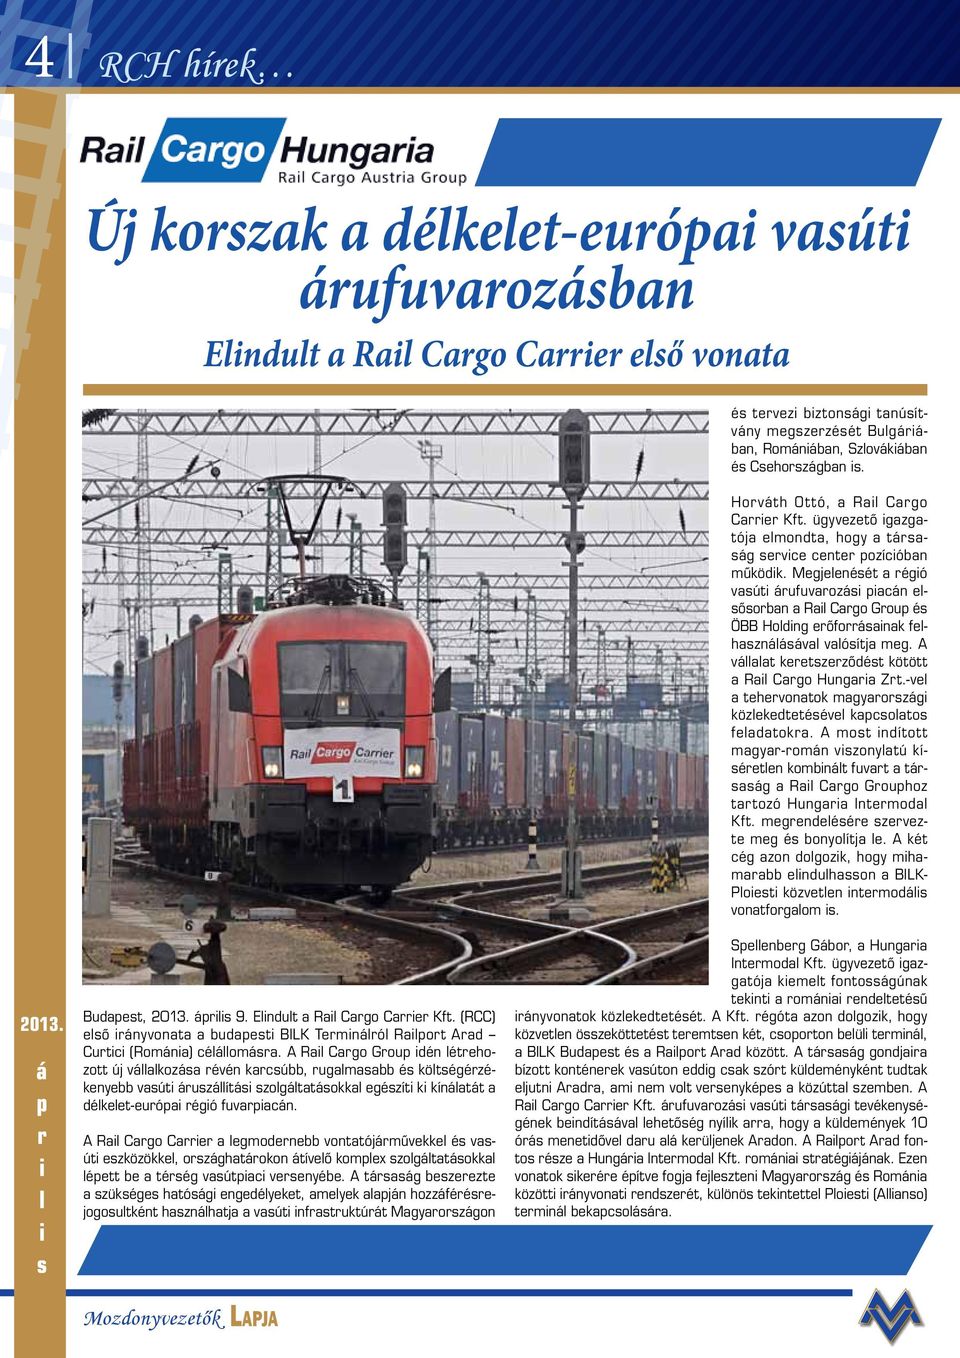 Megjelenését a régió vasúti árufuvarozási piacán elsősorban a Rail Cargo Group és ÖBB Holding erőforrásainak felhasználásával valósítja meg.